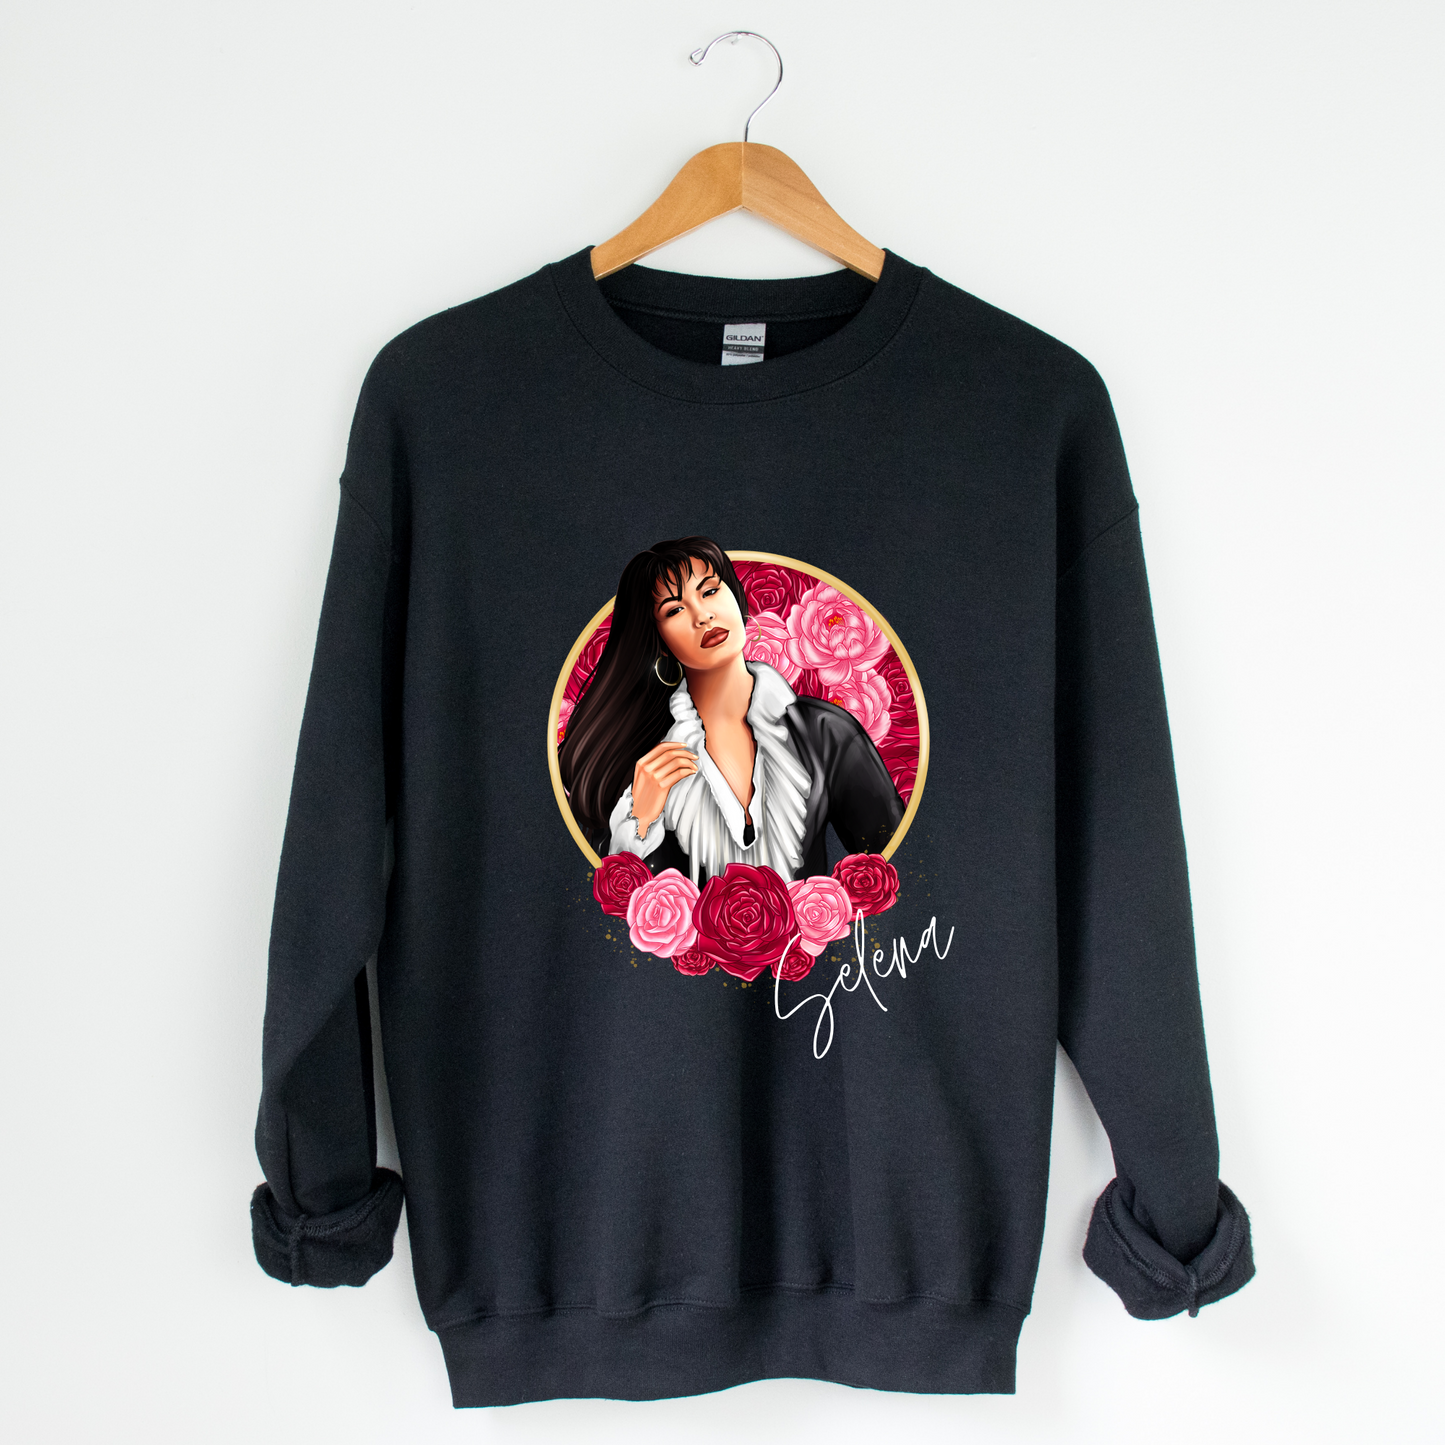 Selena Crew Neck Graphic Sweater